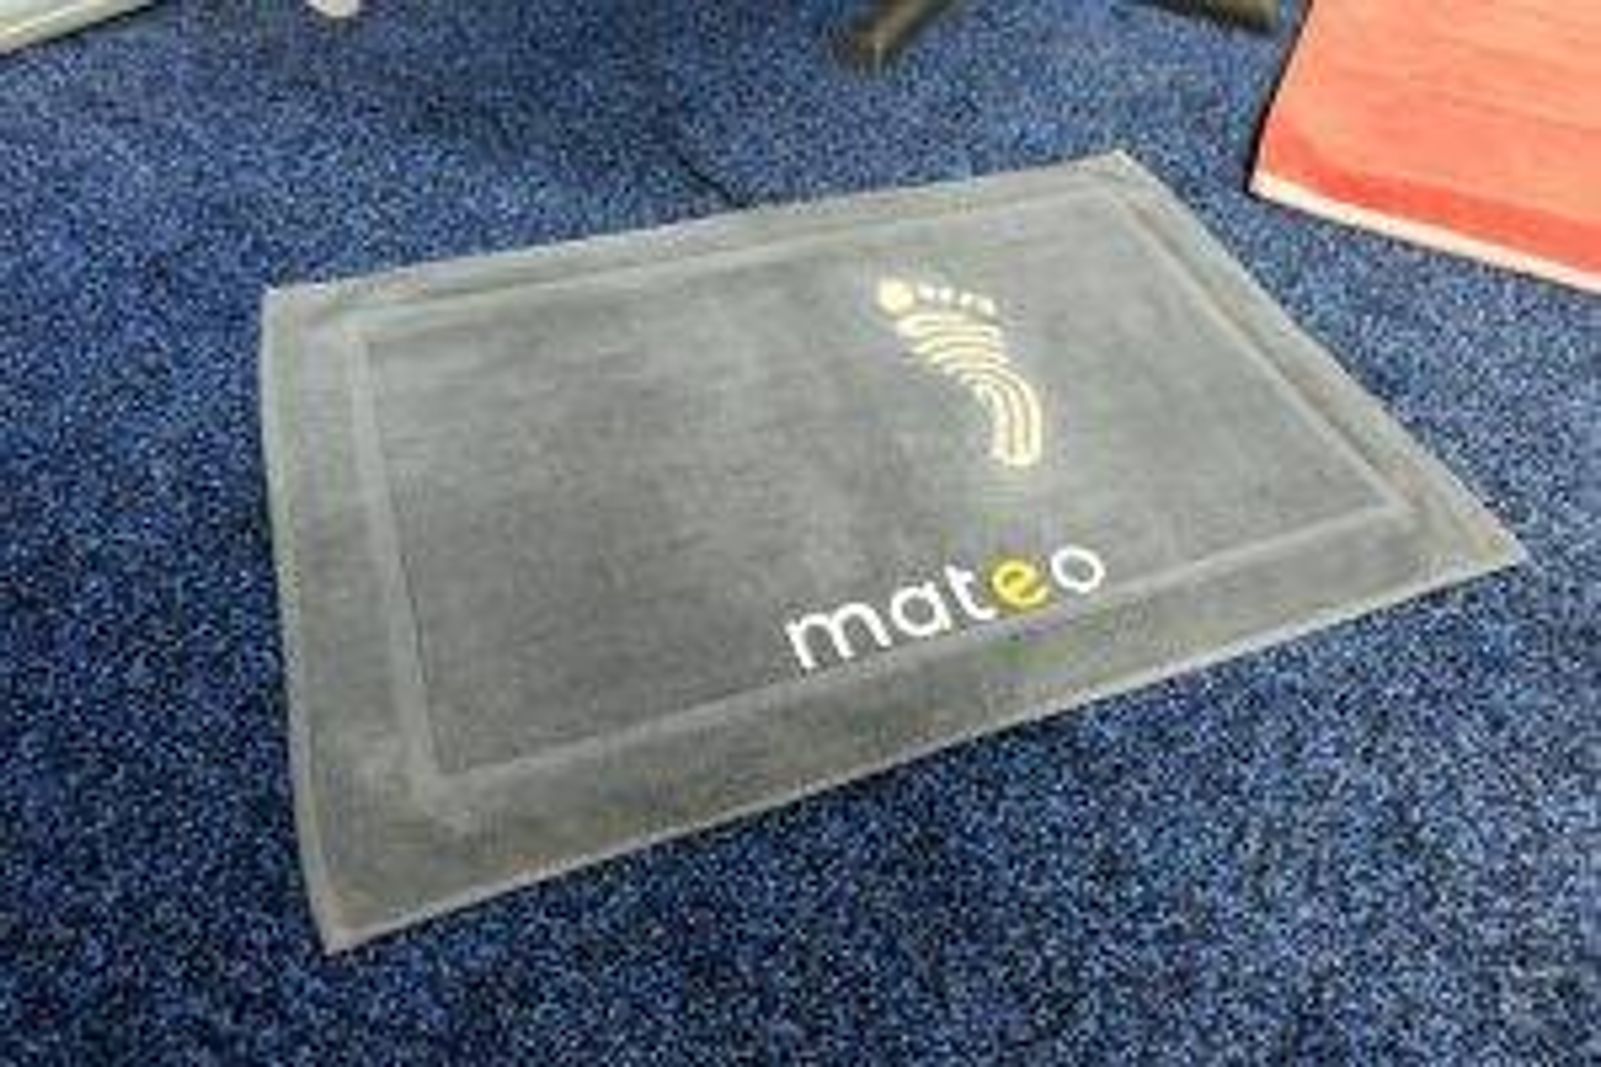 Mateo bath mat